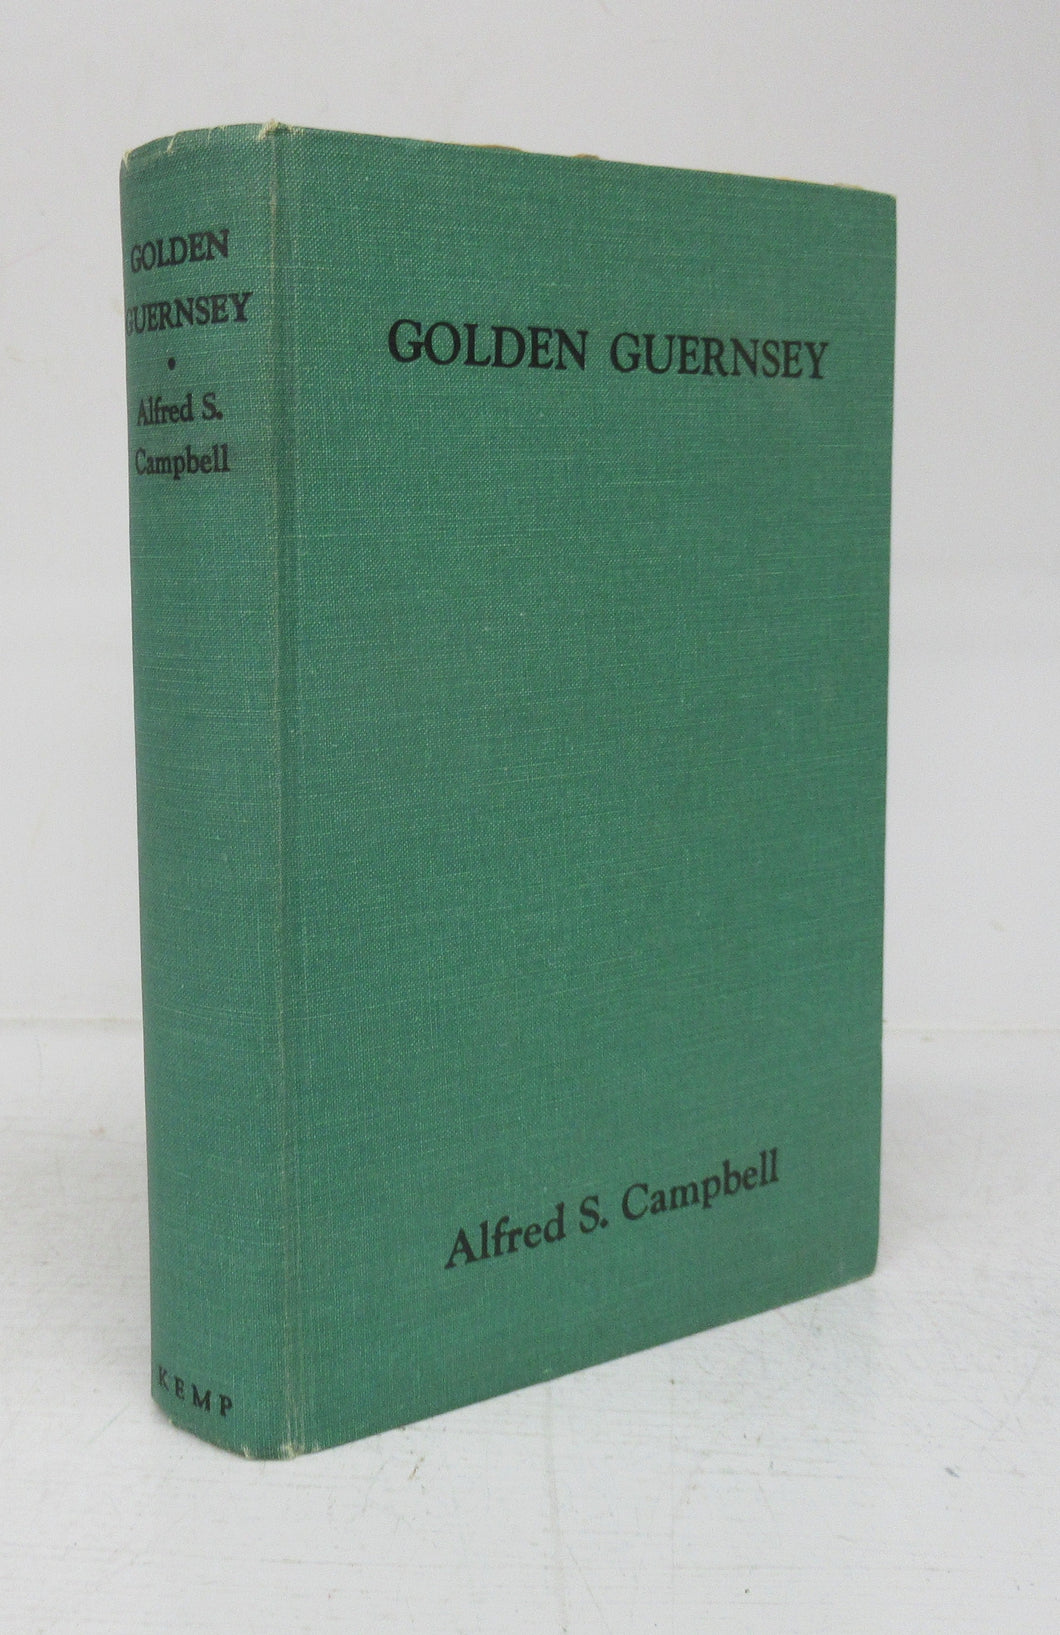 Golden Guernsey